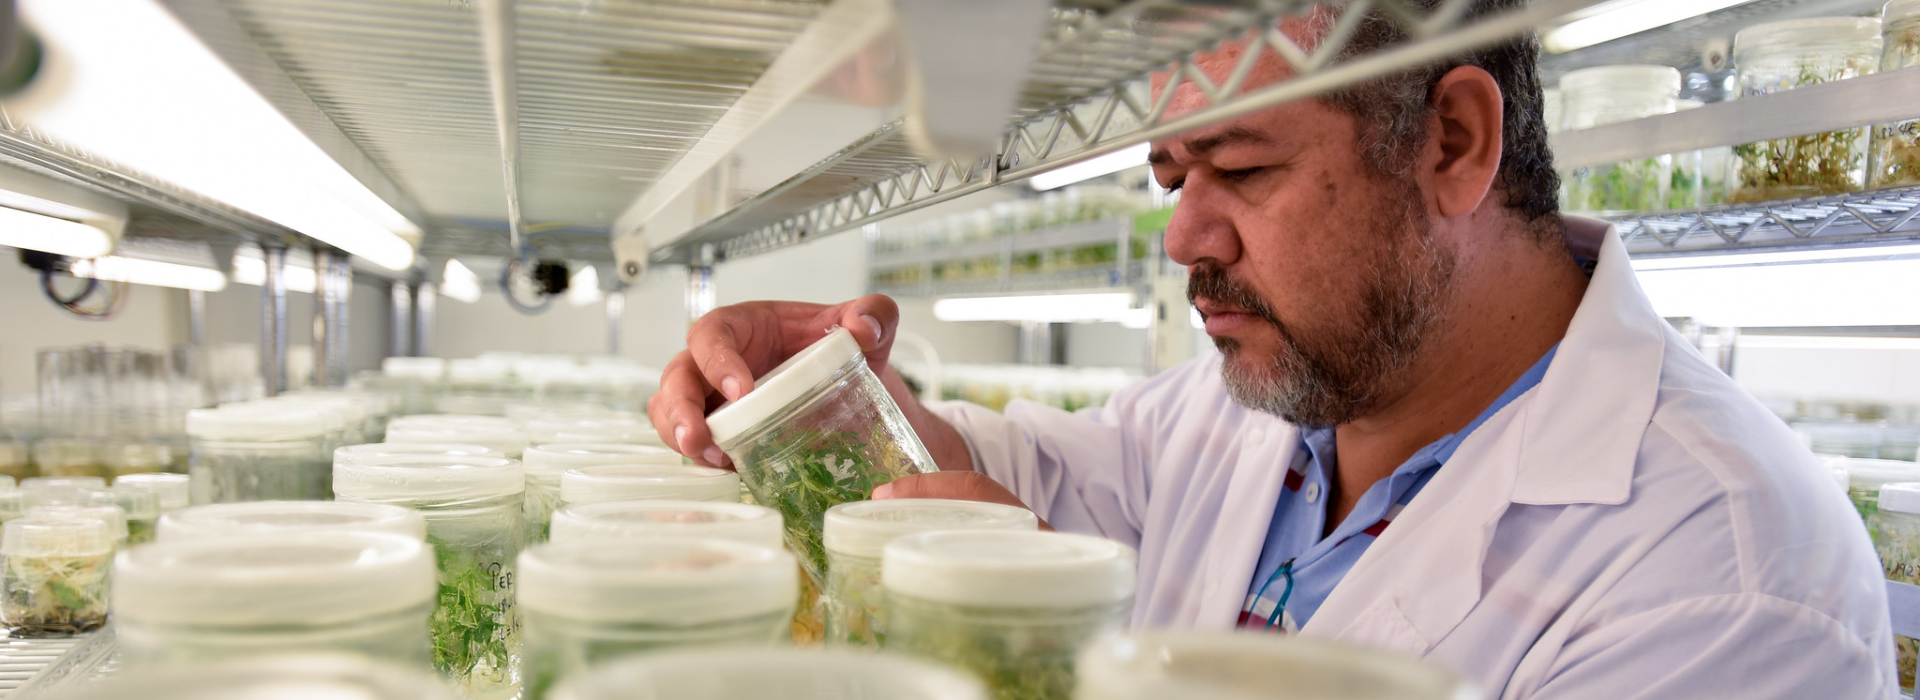 Eine Person in einem Laborkittel betrachtet ein Glas mit Pflanzen.